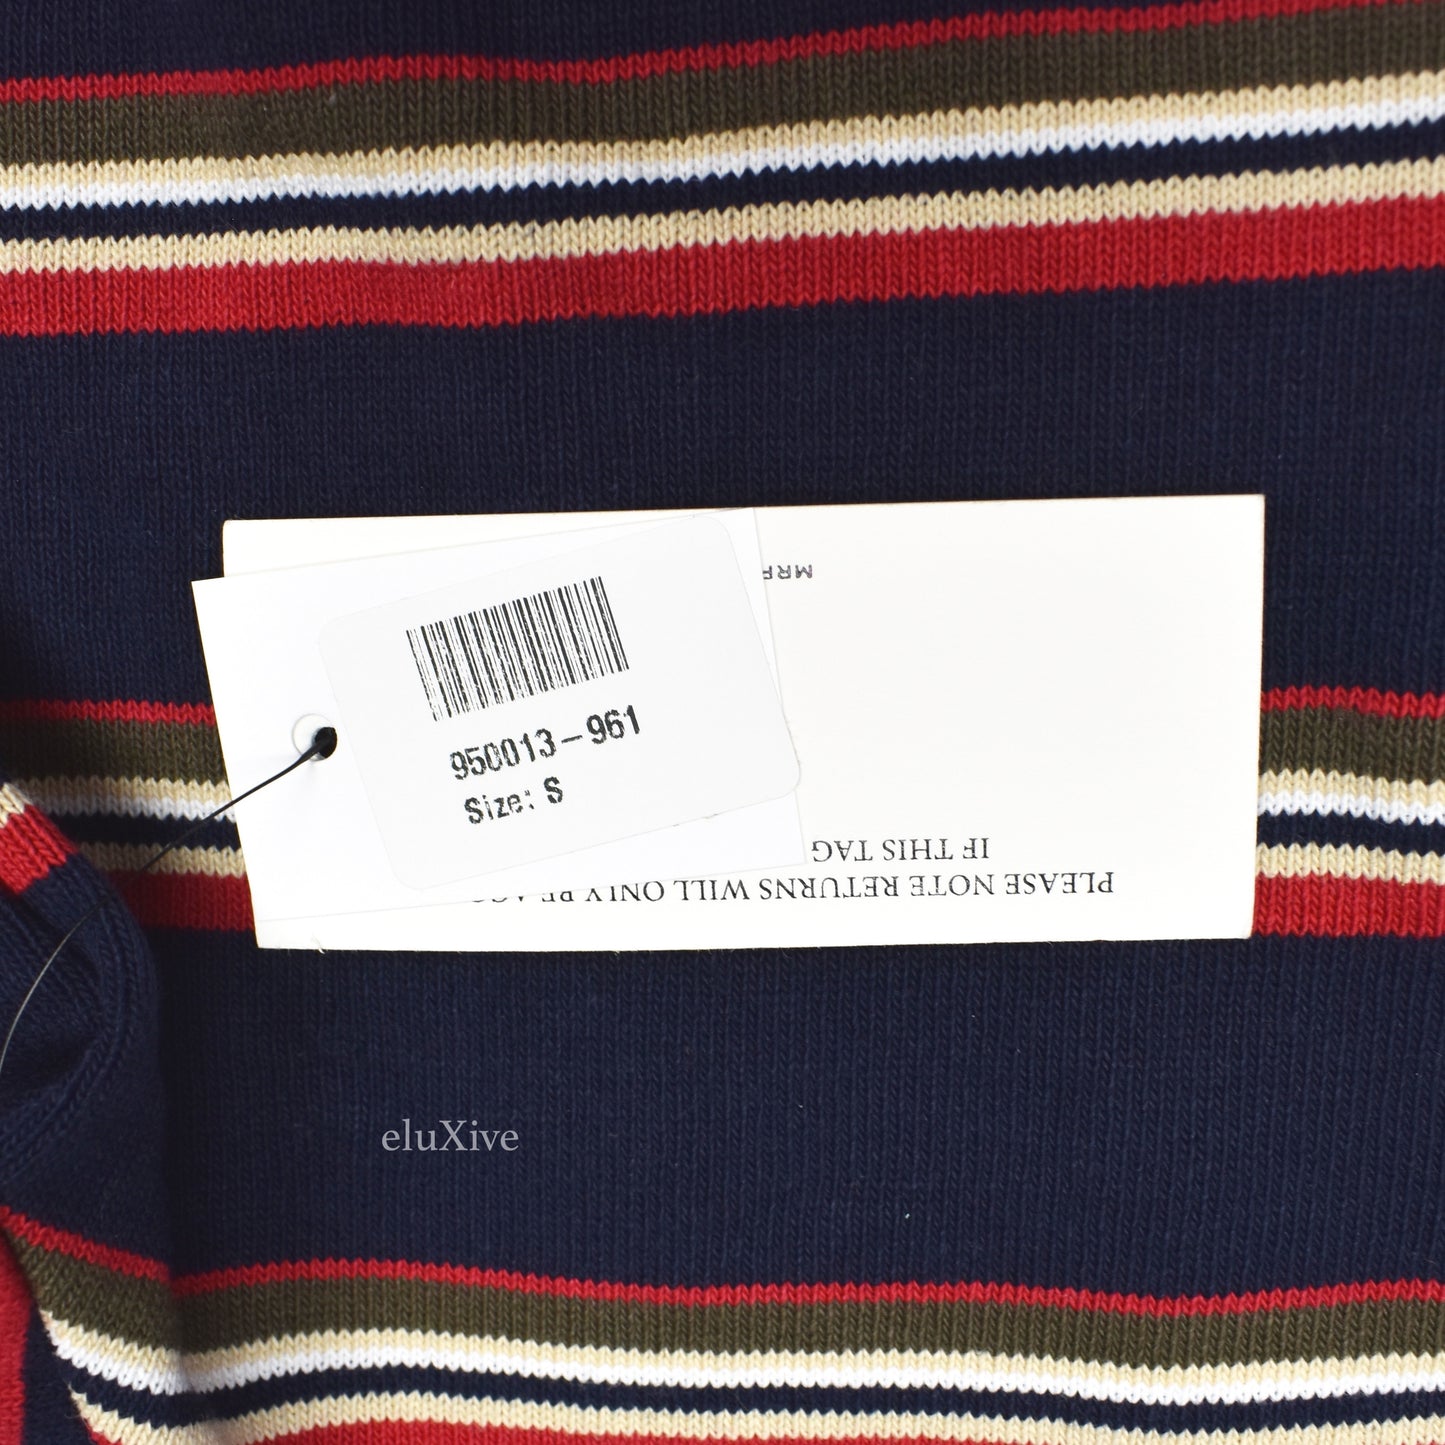 Noah - Striped Nautical Logo Sweatshirt